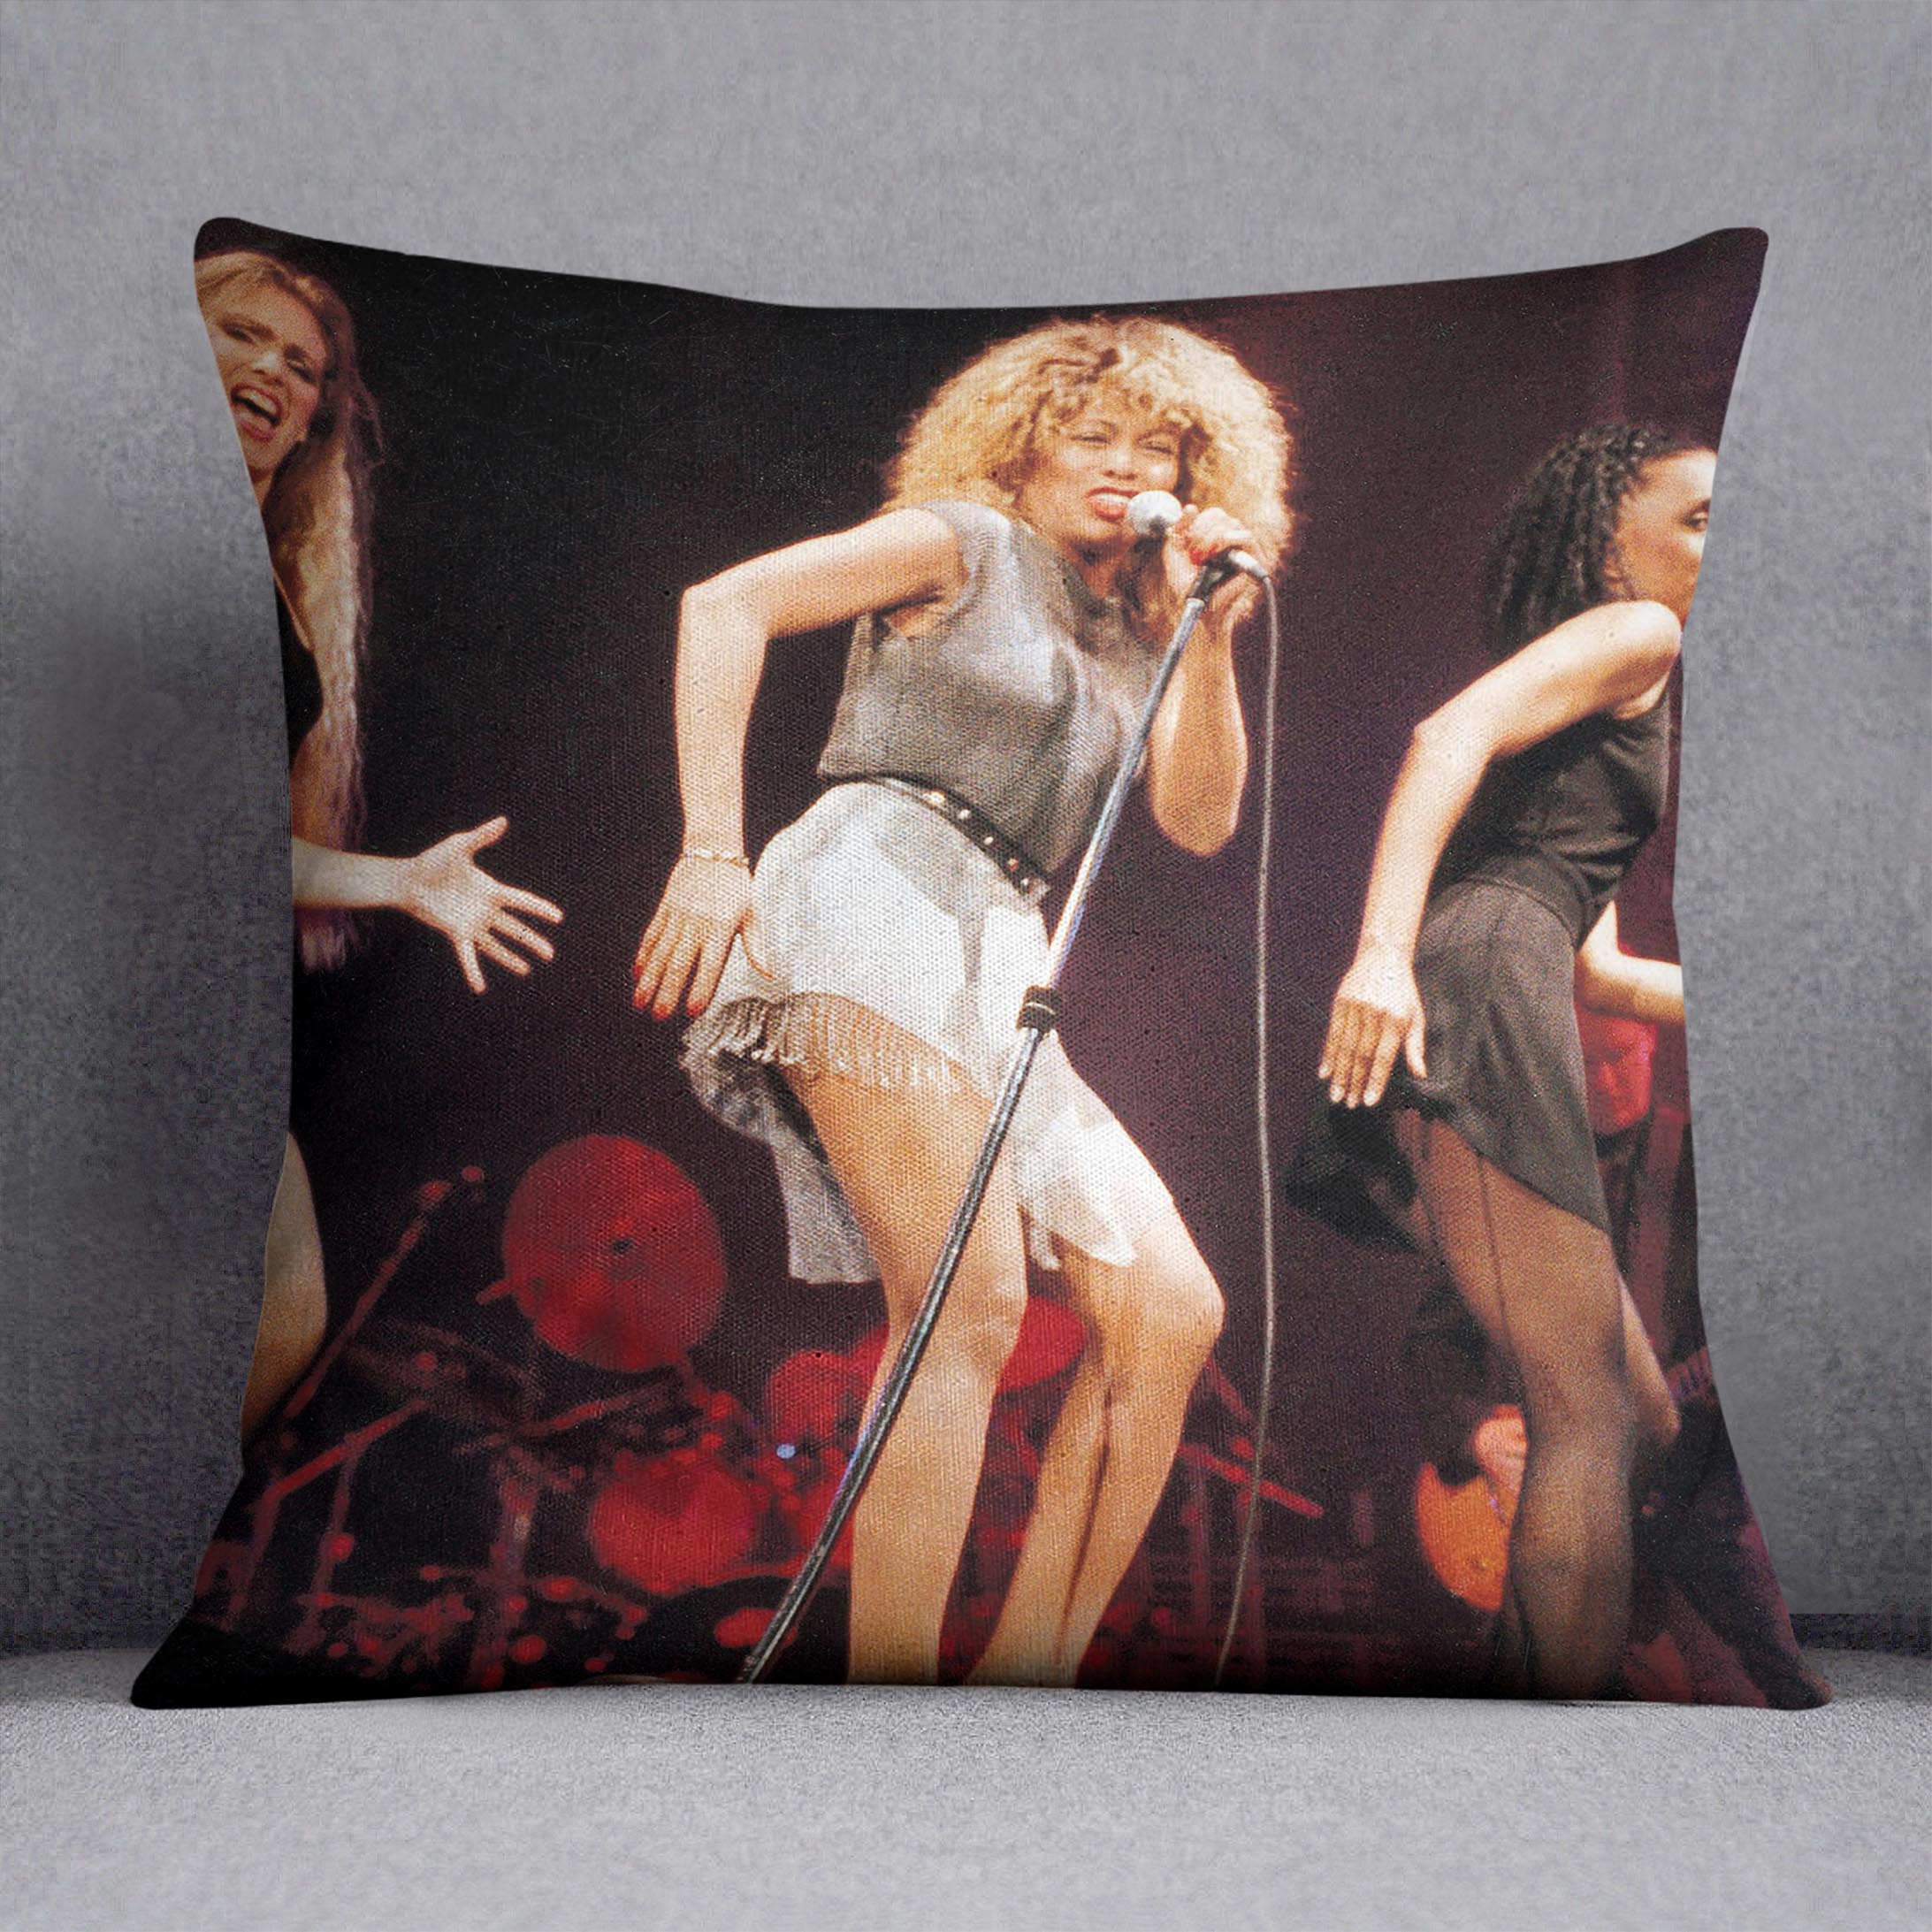 Tina Turner on stage Cushion